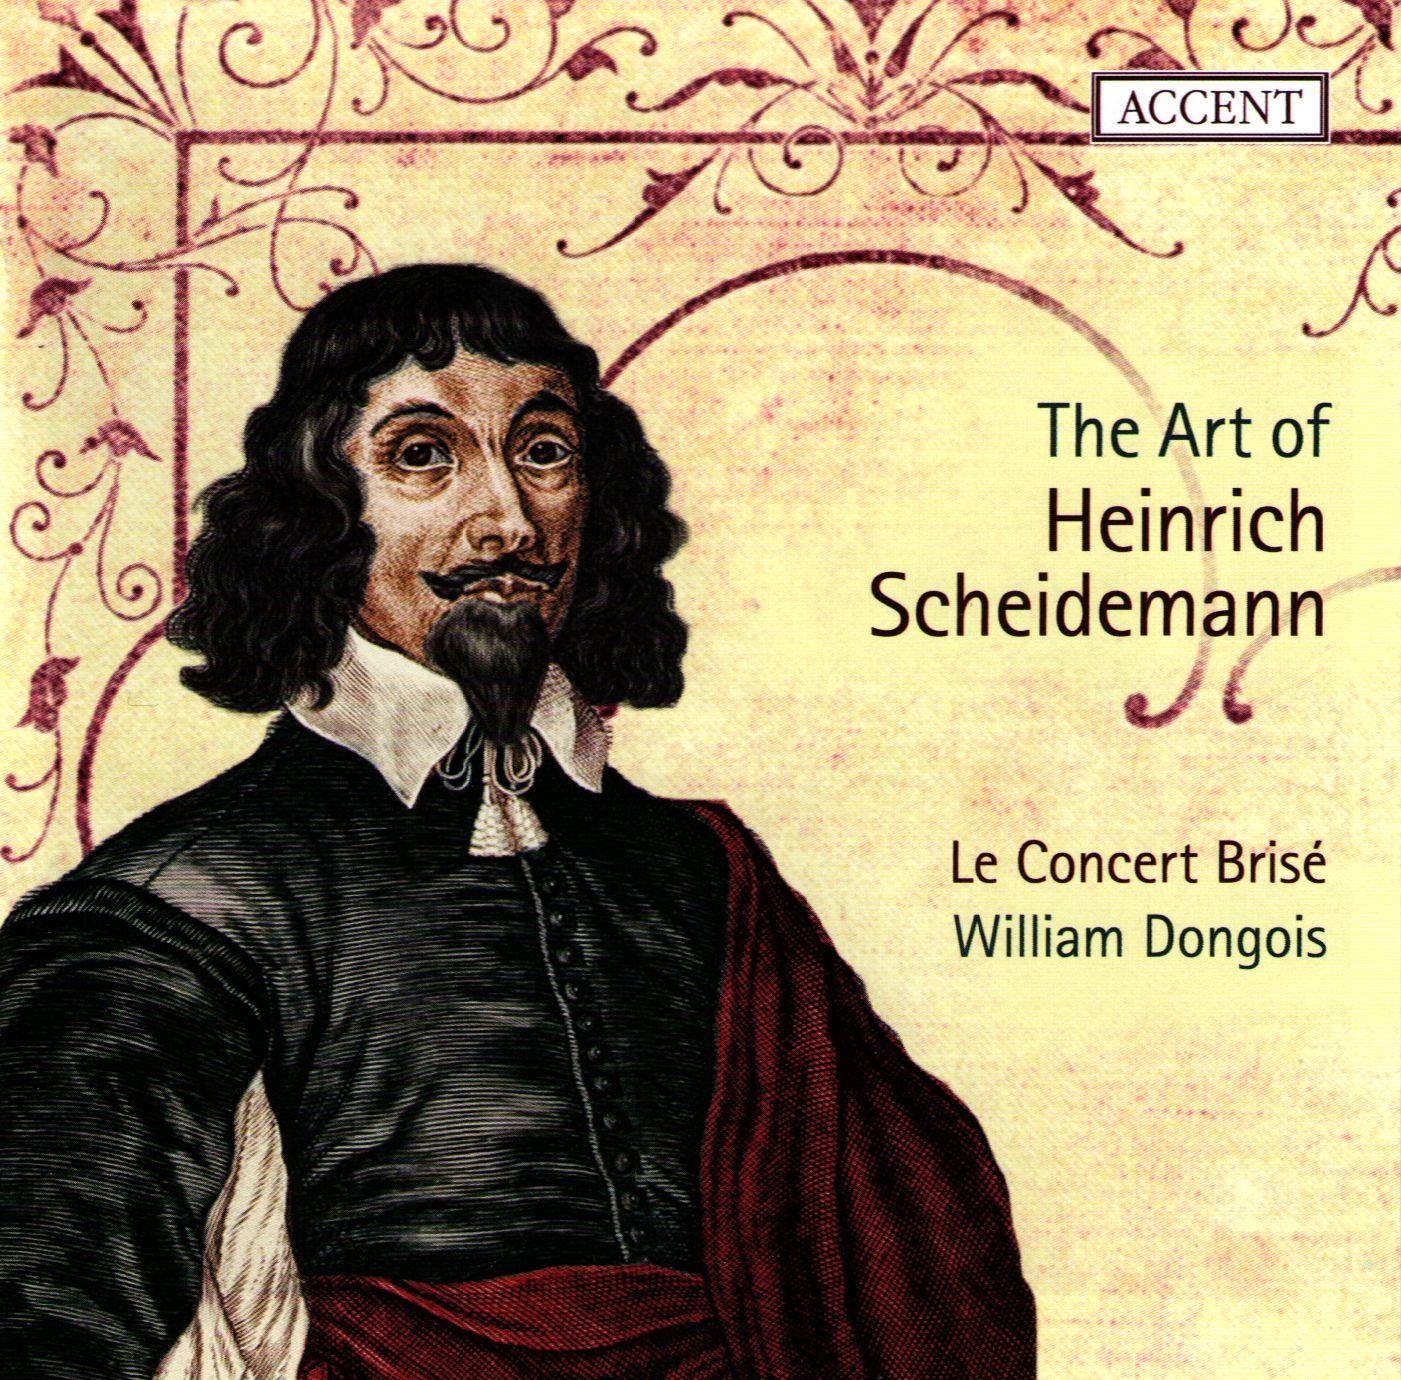 The Art of Heinrich Scheidemann